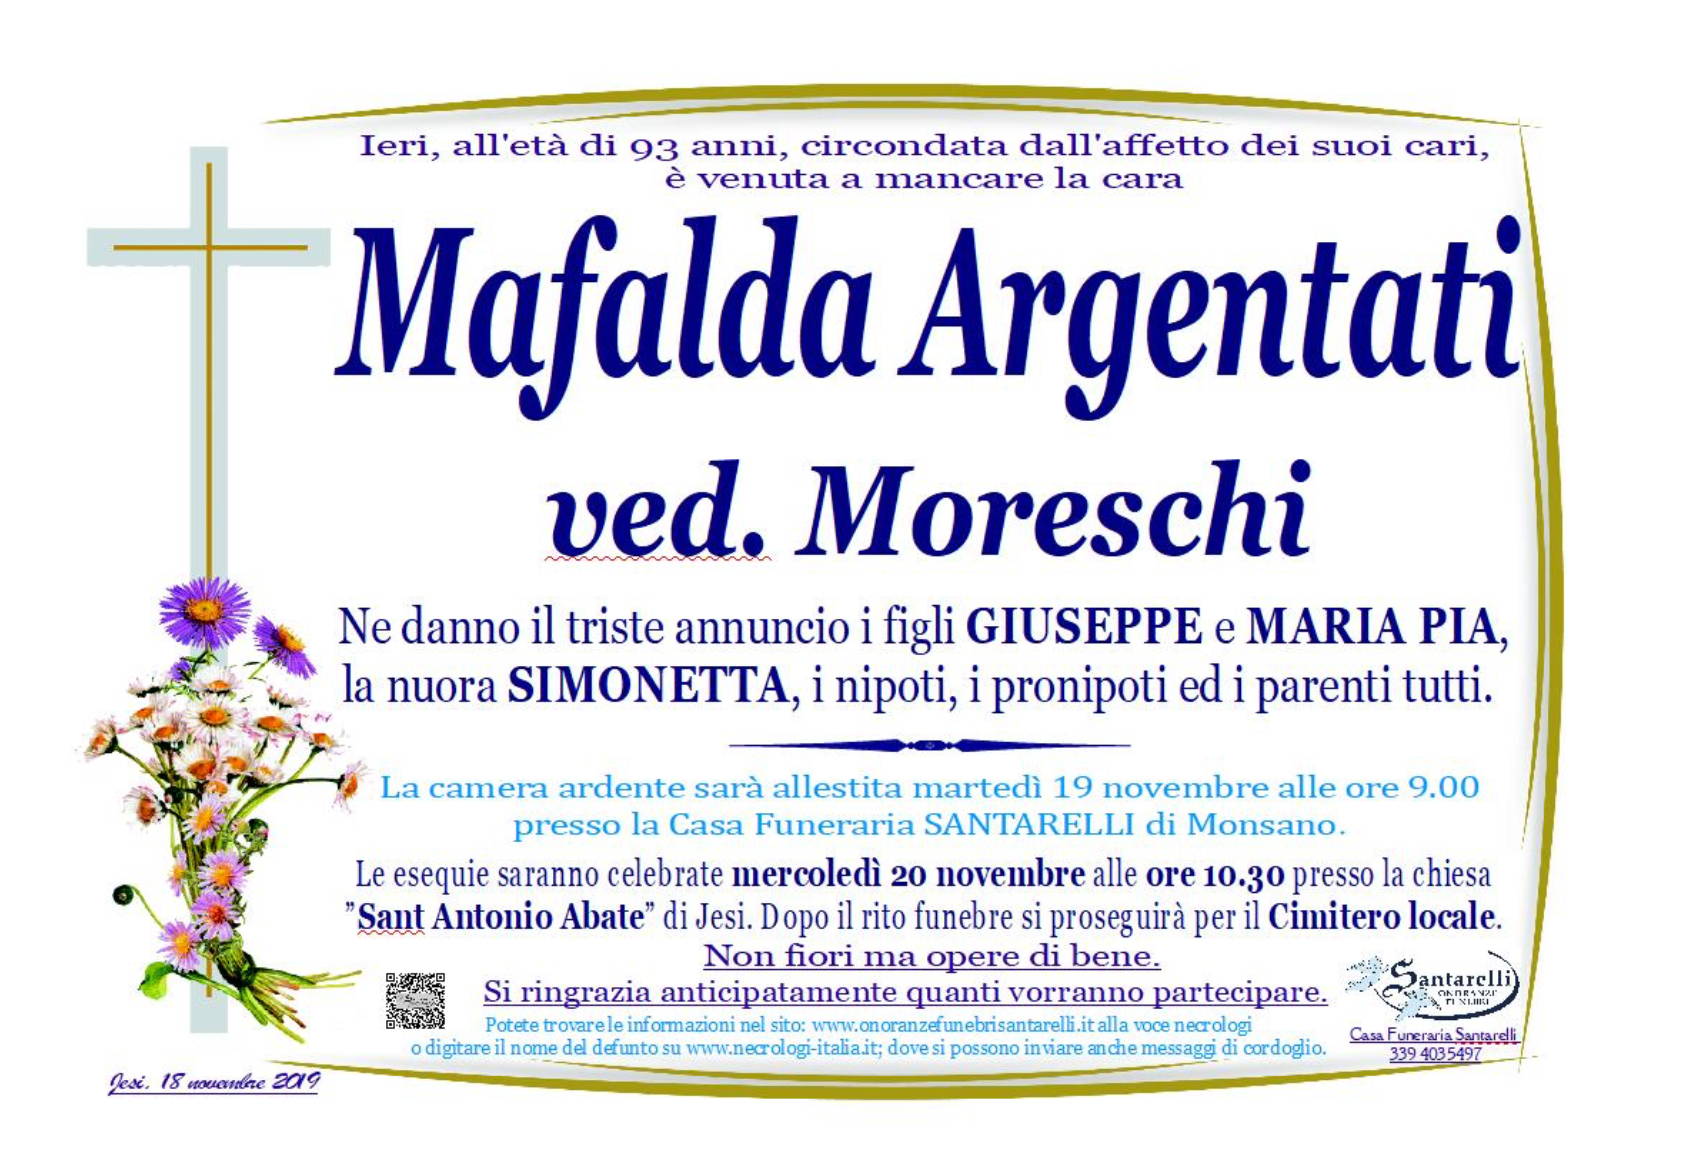 Mafalda Argentati